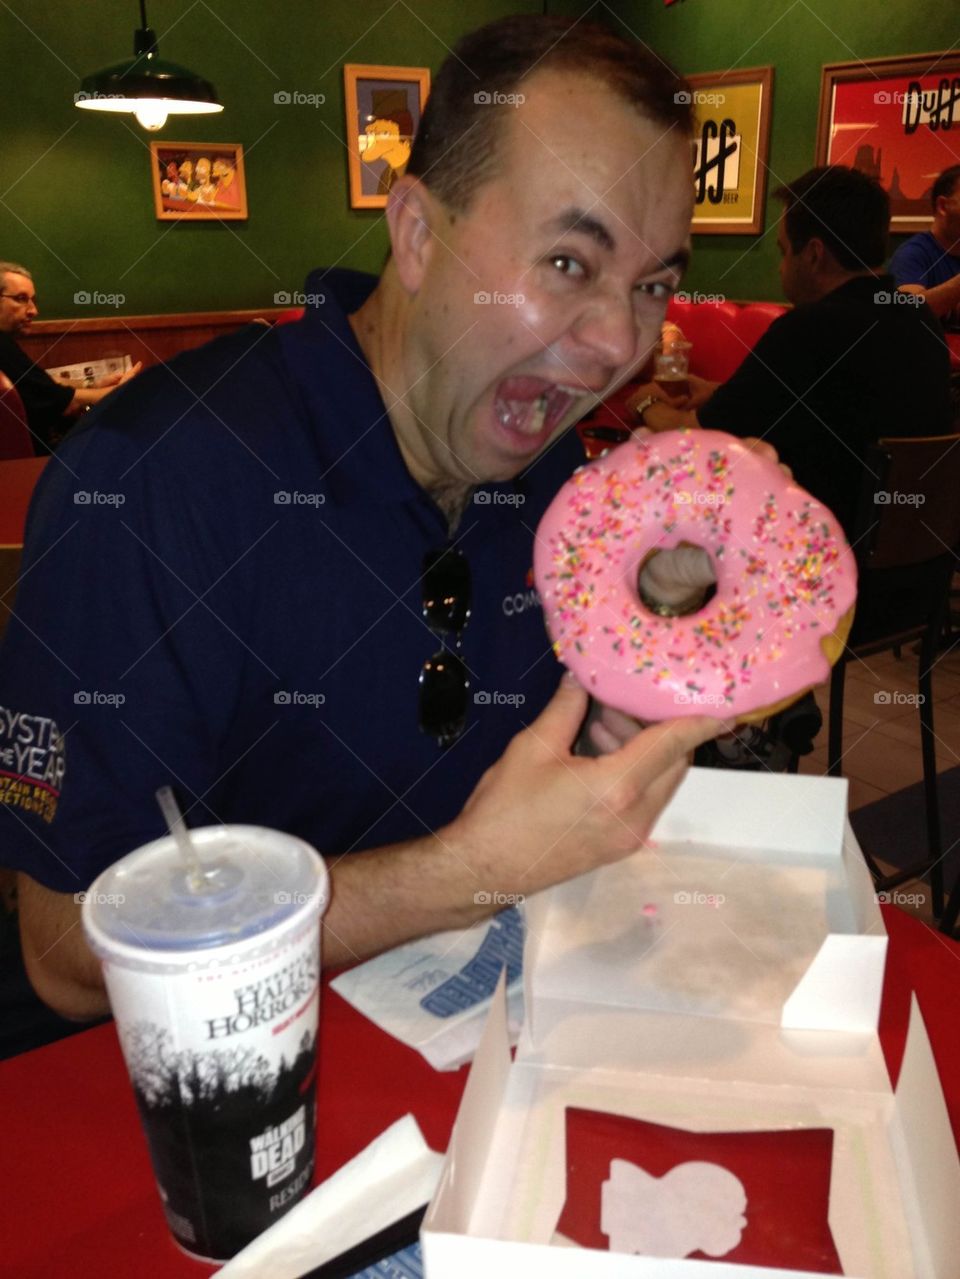 giant donut